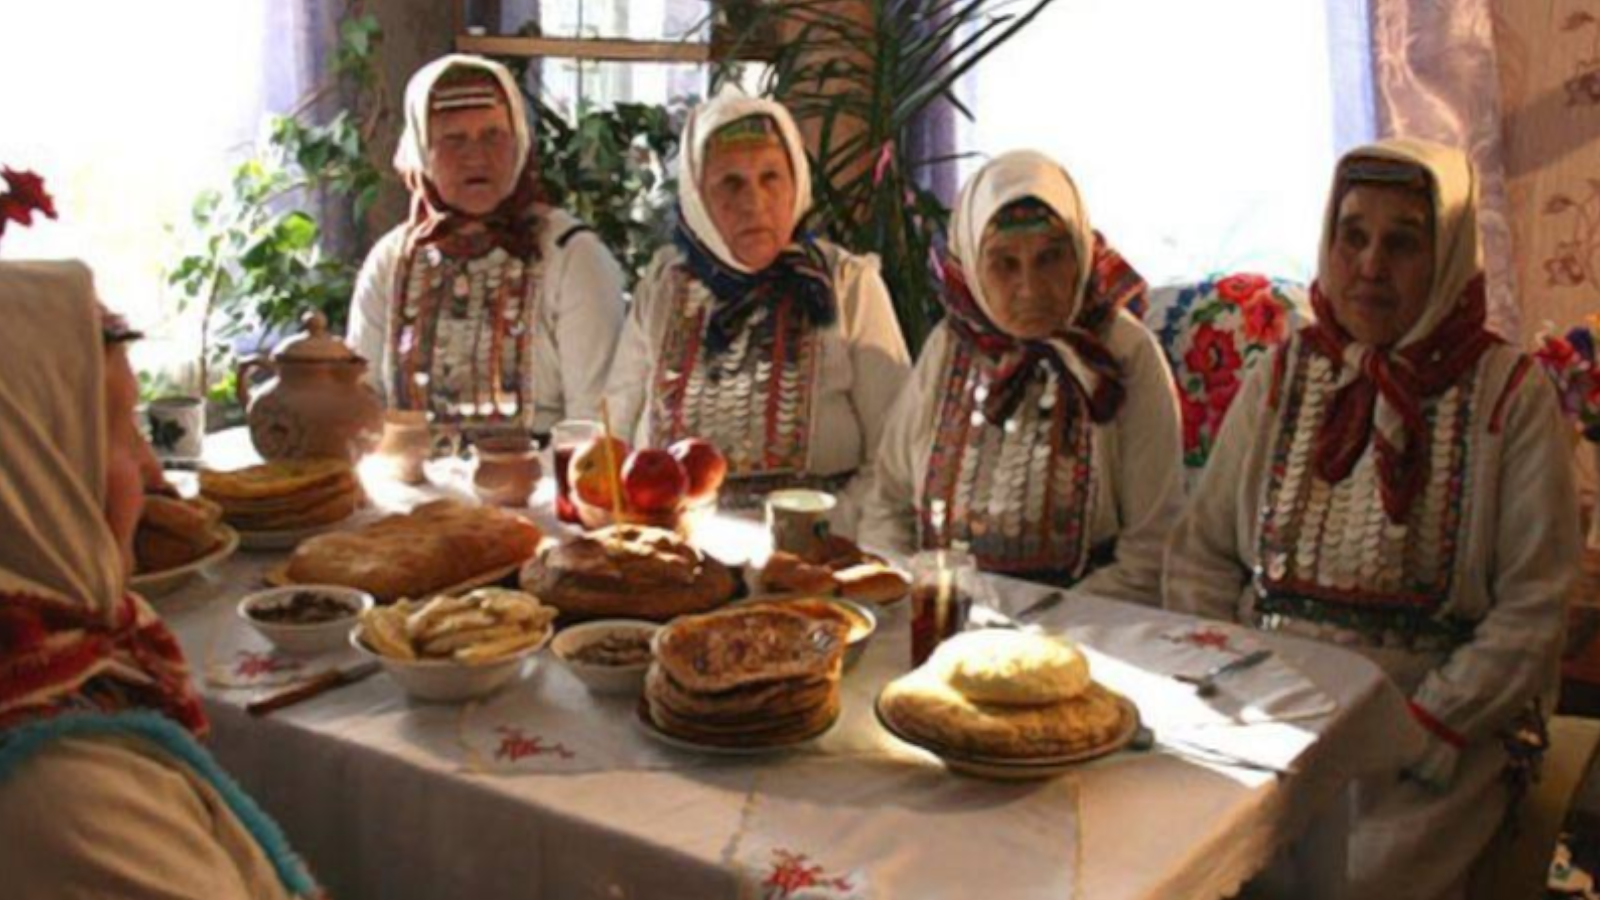 Марийский календарь описывает народные обряды на эту неделю